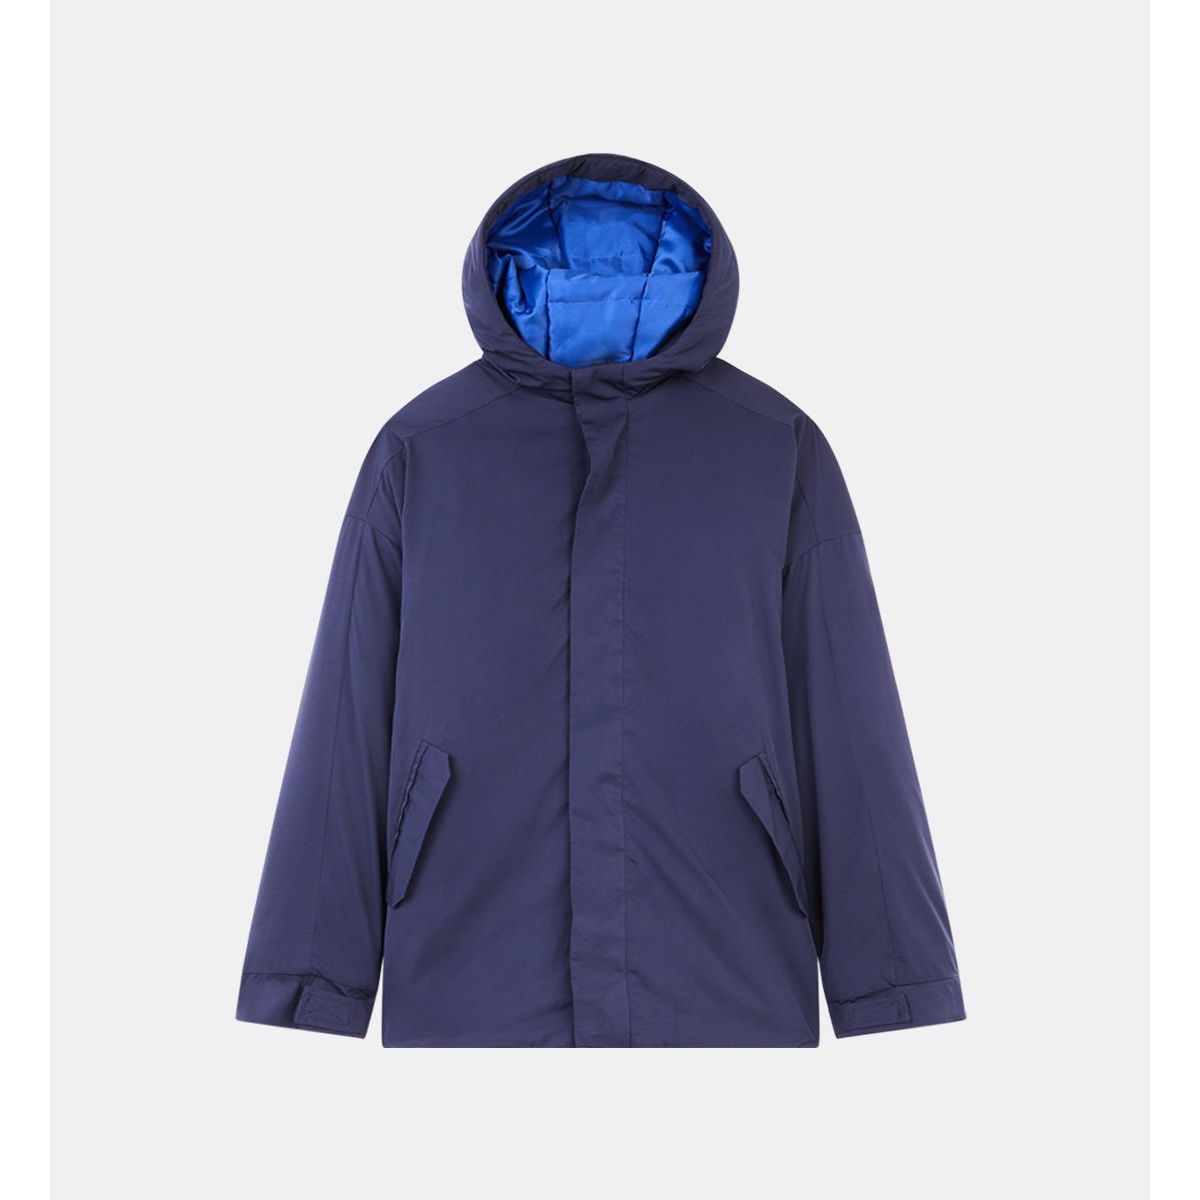 Galeries Lafayette Garçon Vêtements Manteaux & Vestes Manteaux Imperméables Coupe-vent à capuche déperlant Bleu 